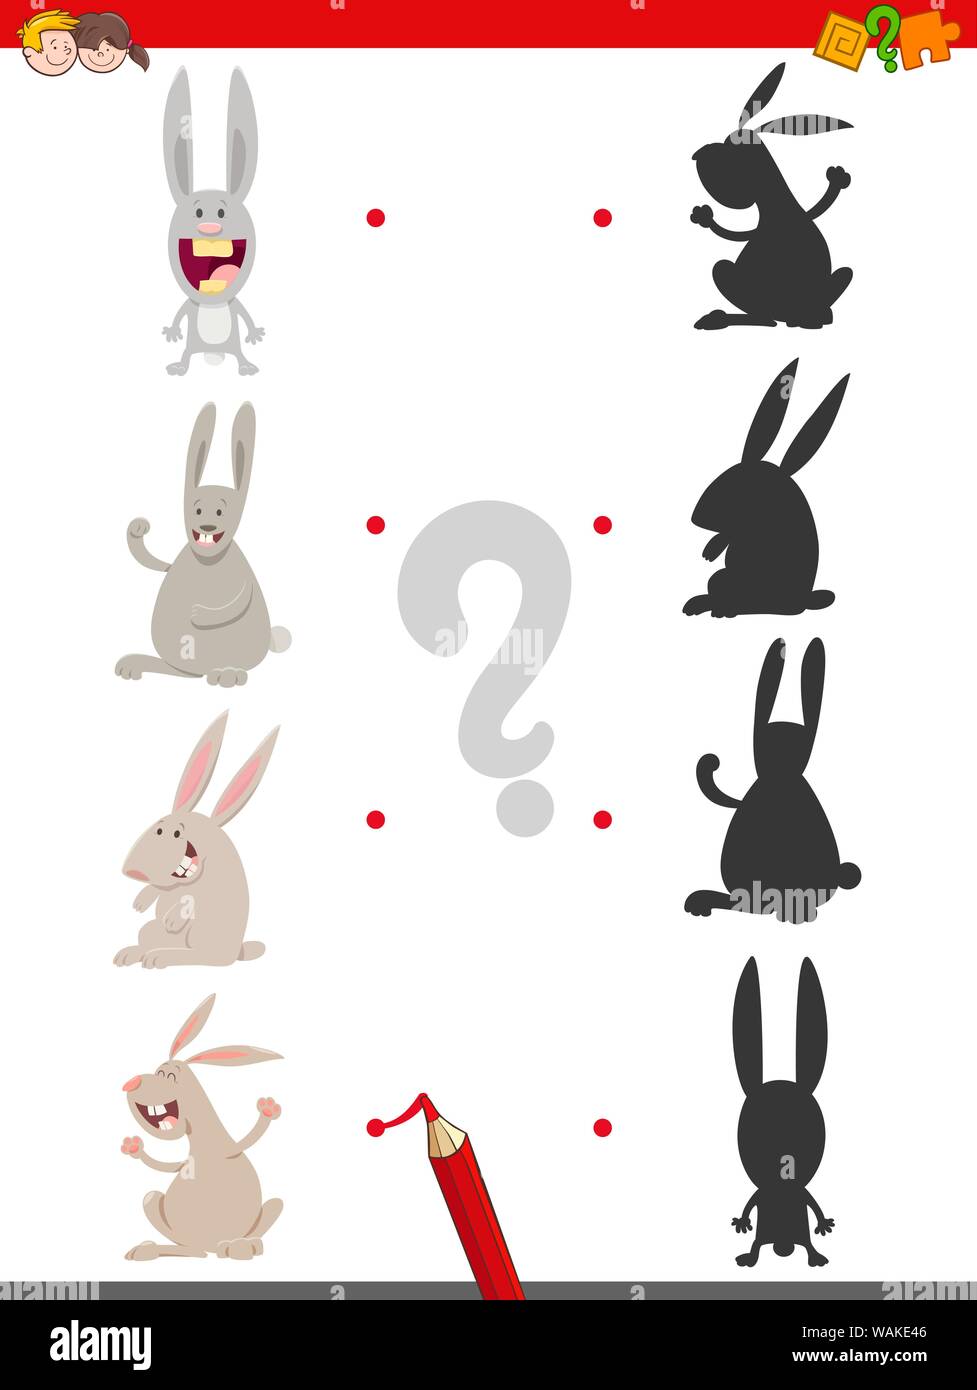 Cartoon Illustration de rejoindre la bonne ombre avec photos jeu éducatif pour les enfants avec des Lapins mignons personnages Illustration de Vecteur